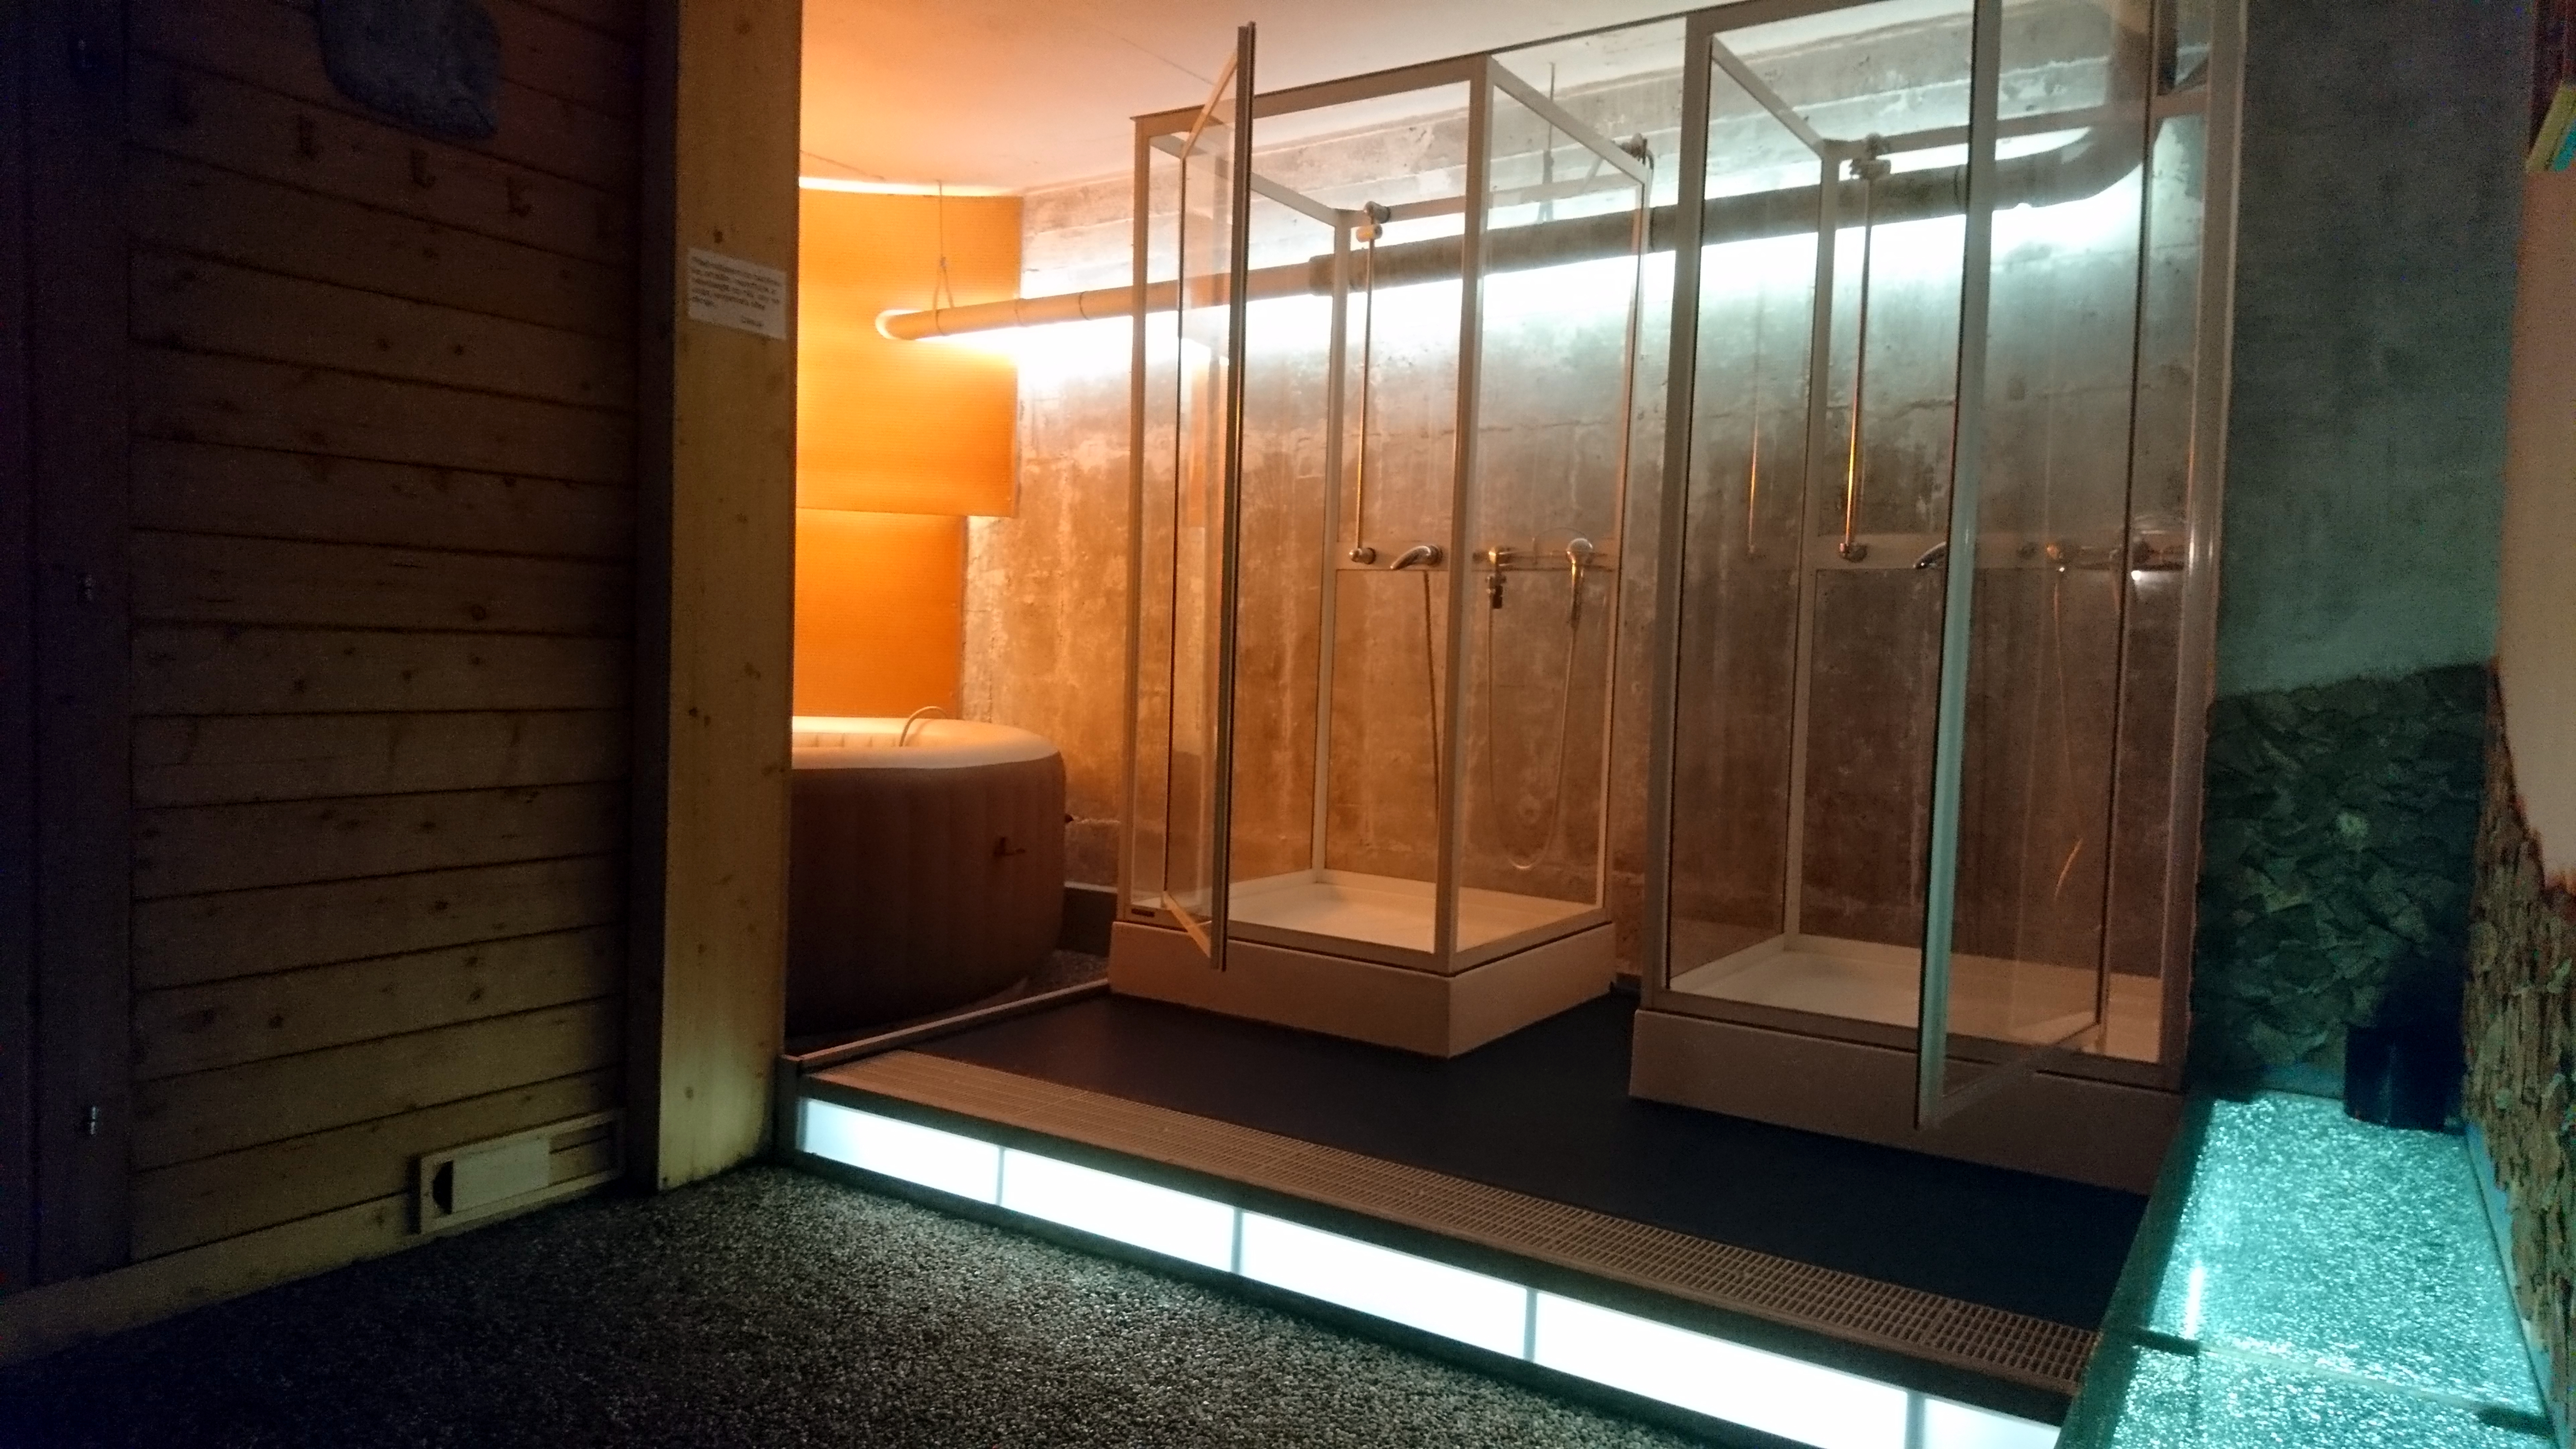 finská sauna, ochlazení, otužování